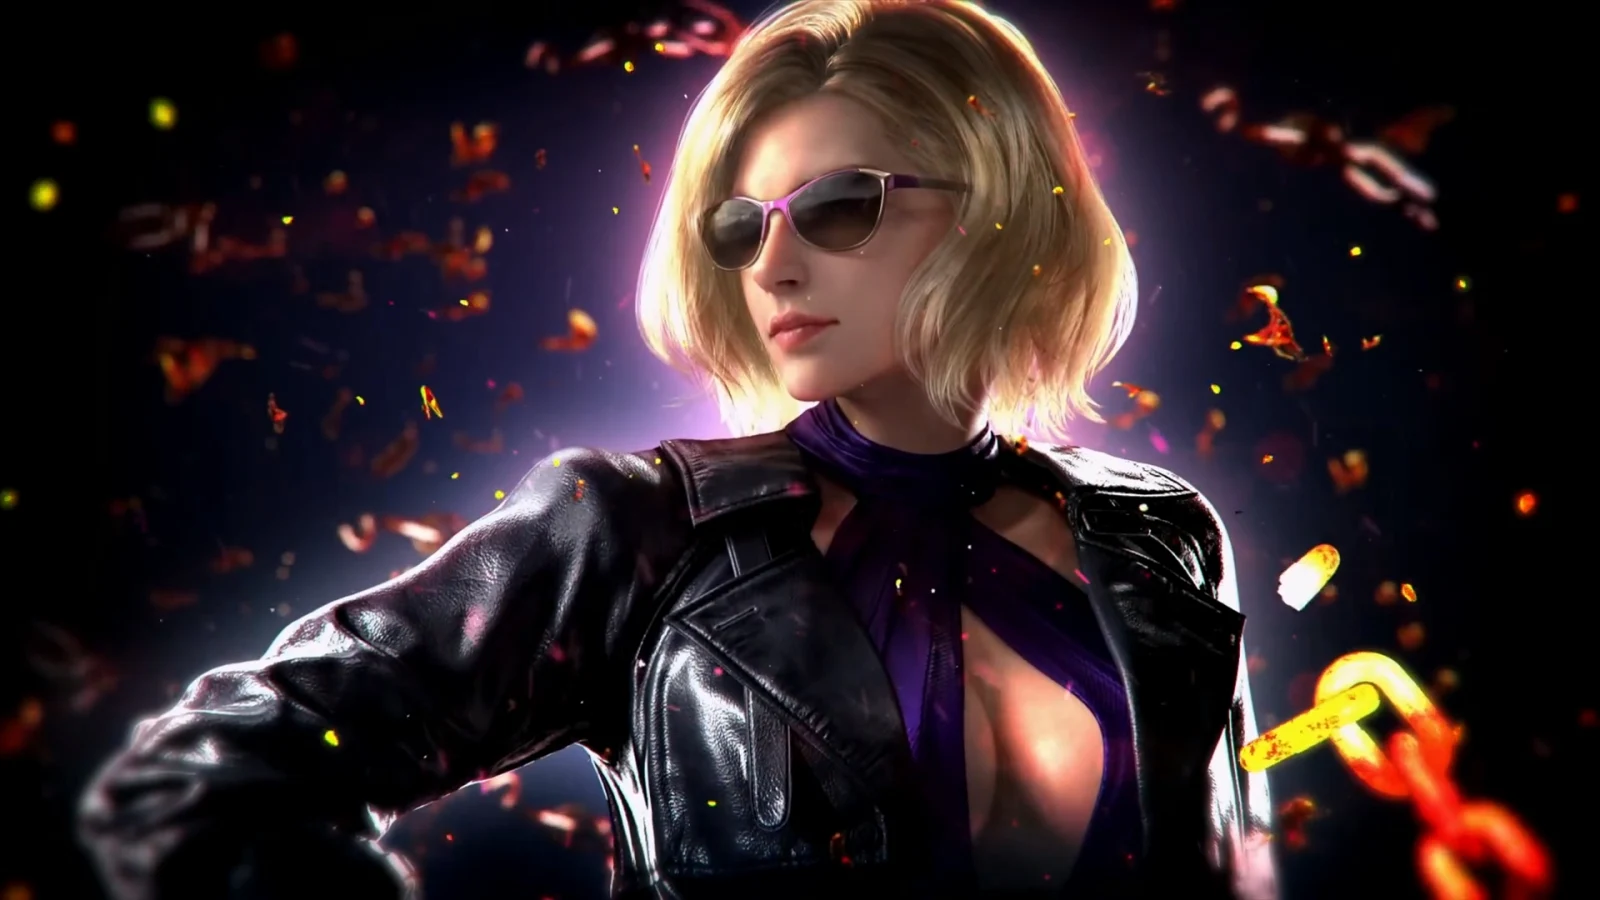 《铁拳8》放出游戏机制介绍视频及“妮娜·威廉姆斯”角色宣传片